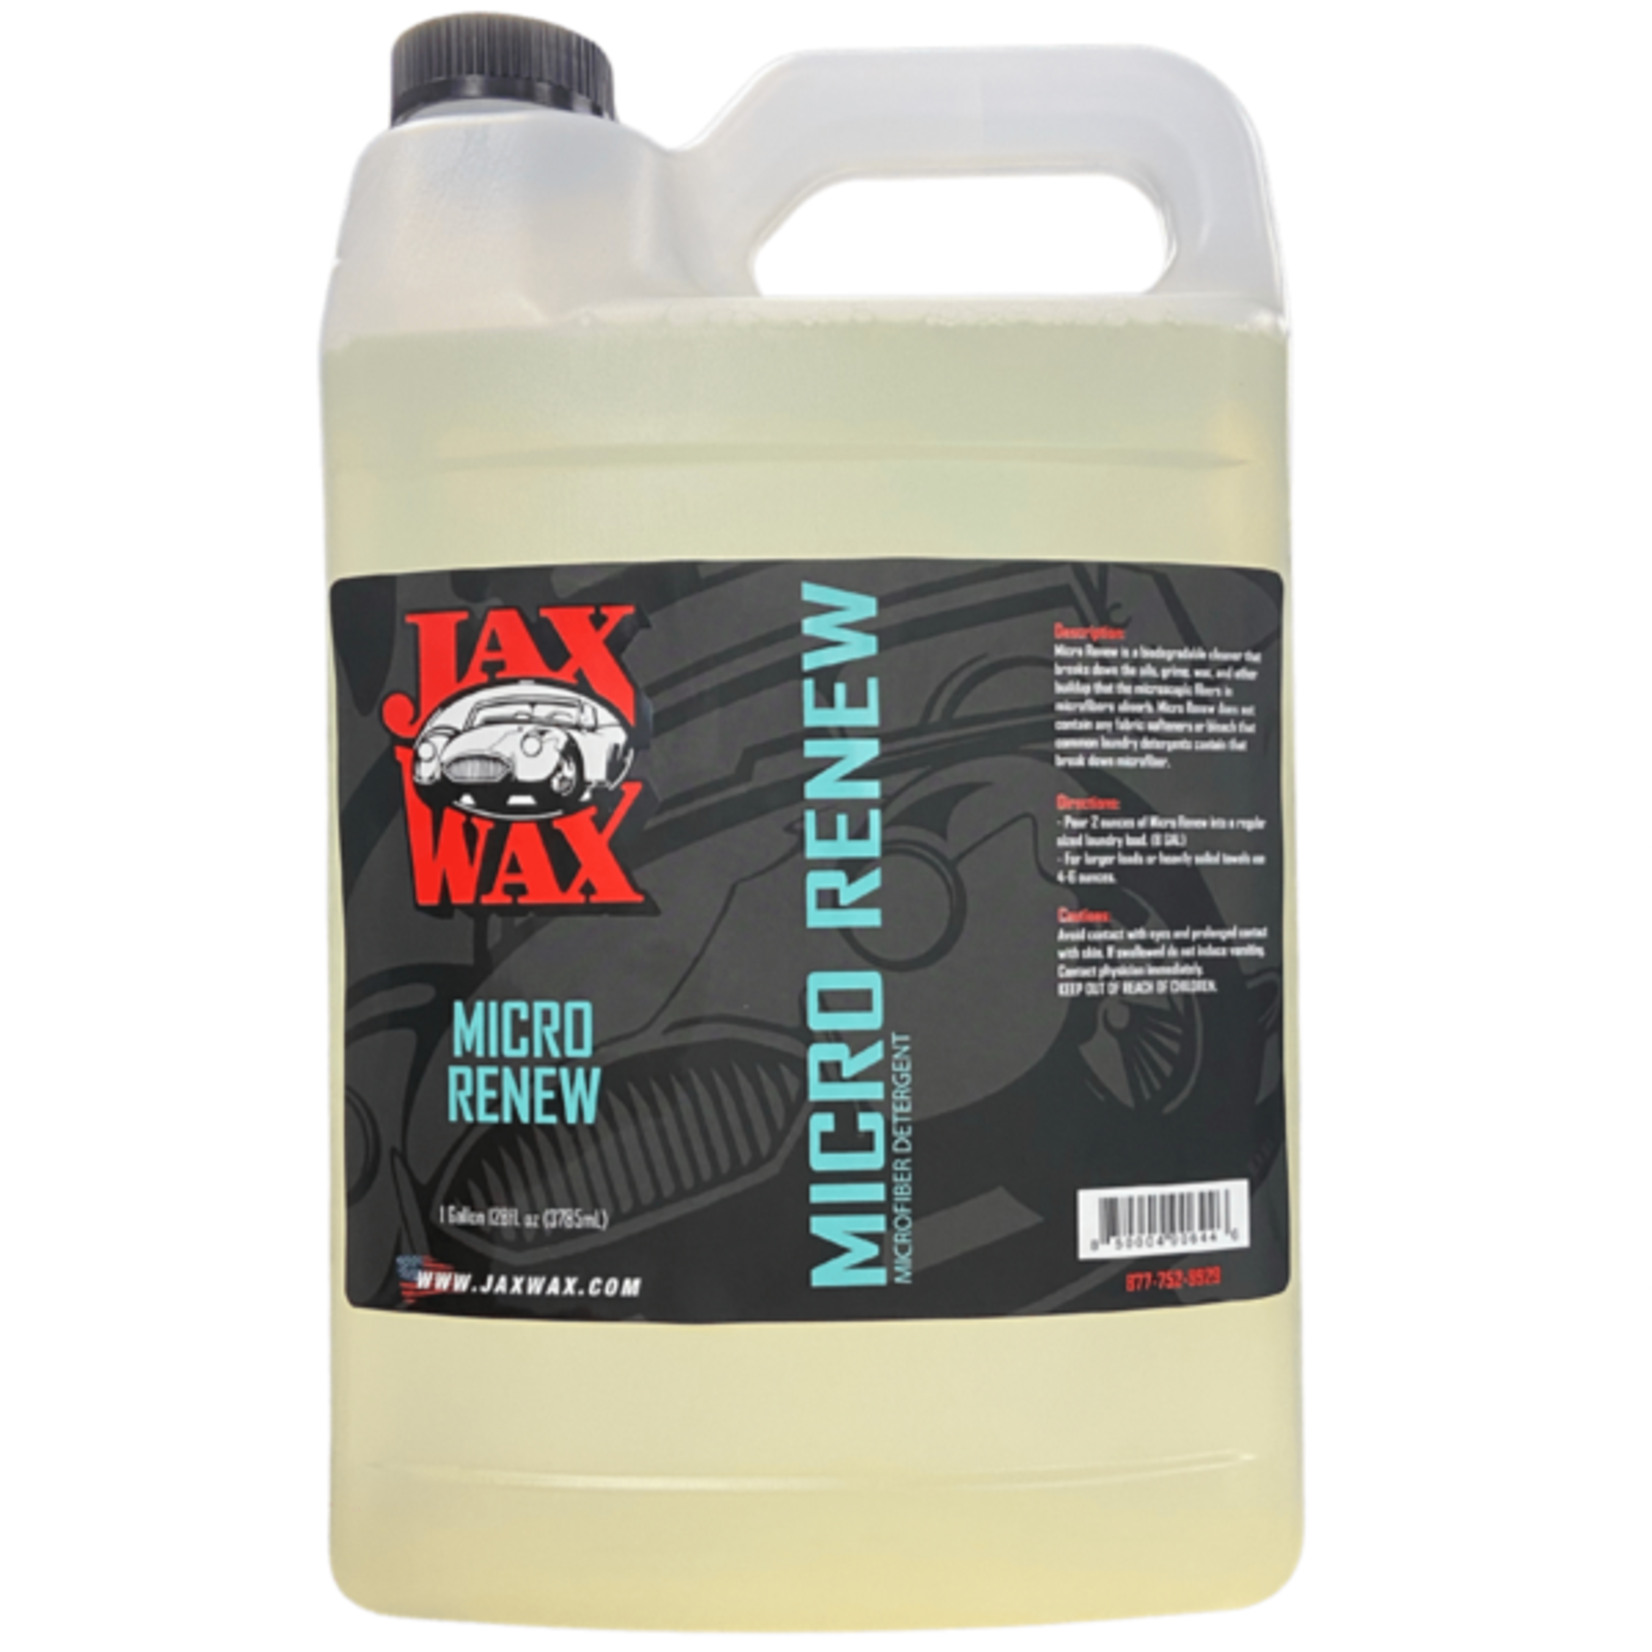 Jax Wax Micro Renew (Gallon)